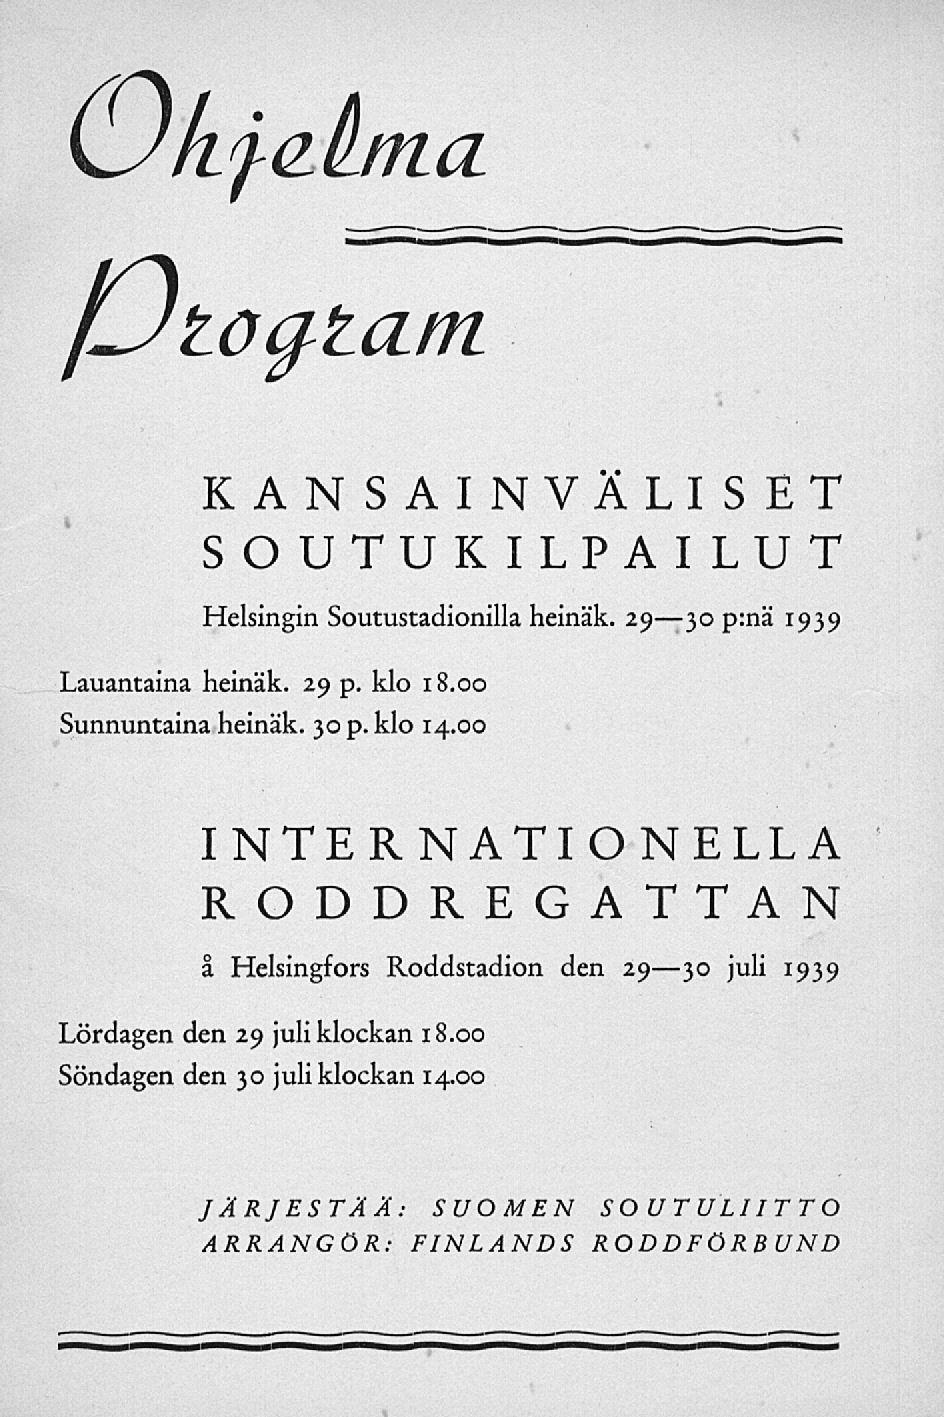 \Jkfdtma fulog^tam KANSAINVÄLISET SOUTUKILPAILUT Helsingin Soutustadionilla heinäk. 2930 p:nä 1939 Lauantaina heinäk. 29 p. klo 18.00 Sunnuntaina heinäk. 30 p. klo 14.